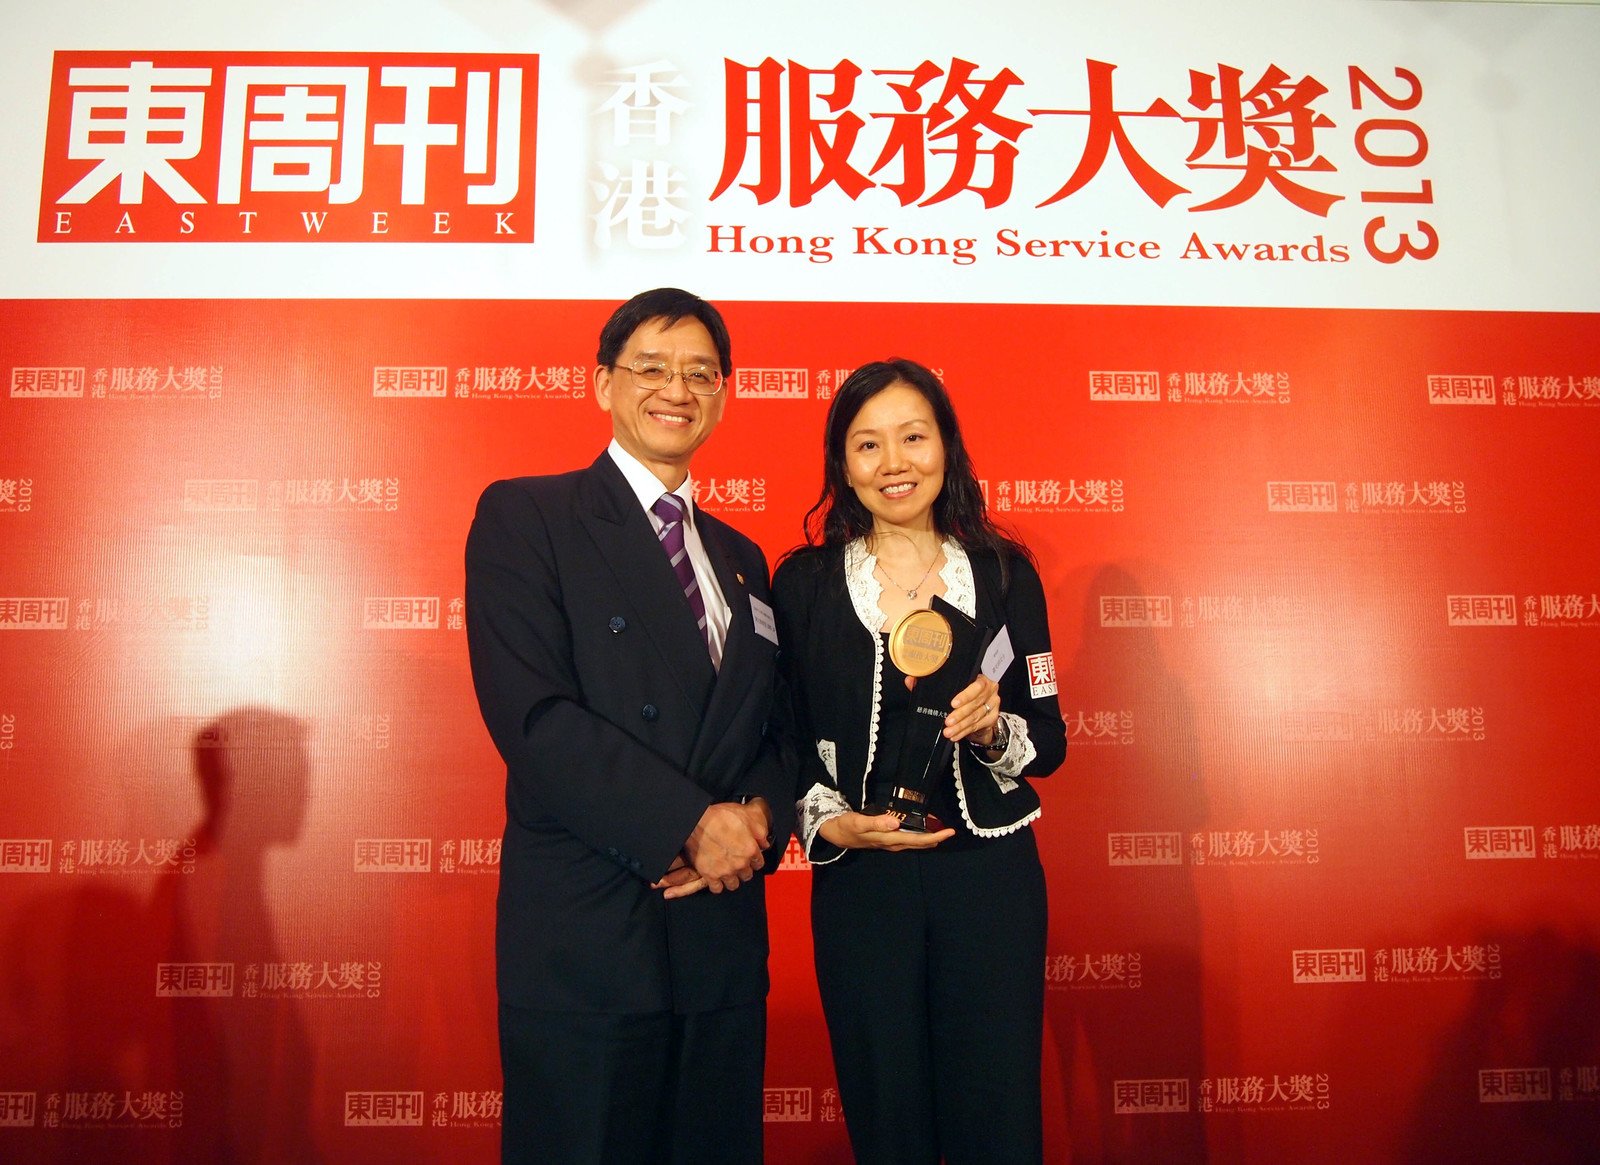 樂施會籌款及傳訊總監蕭美娟女士與香港中文大學EMBA課程主任陳志輝教授於頒獎禮上合照。